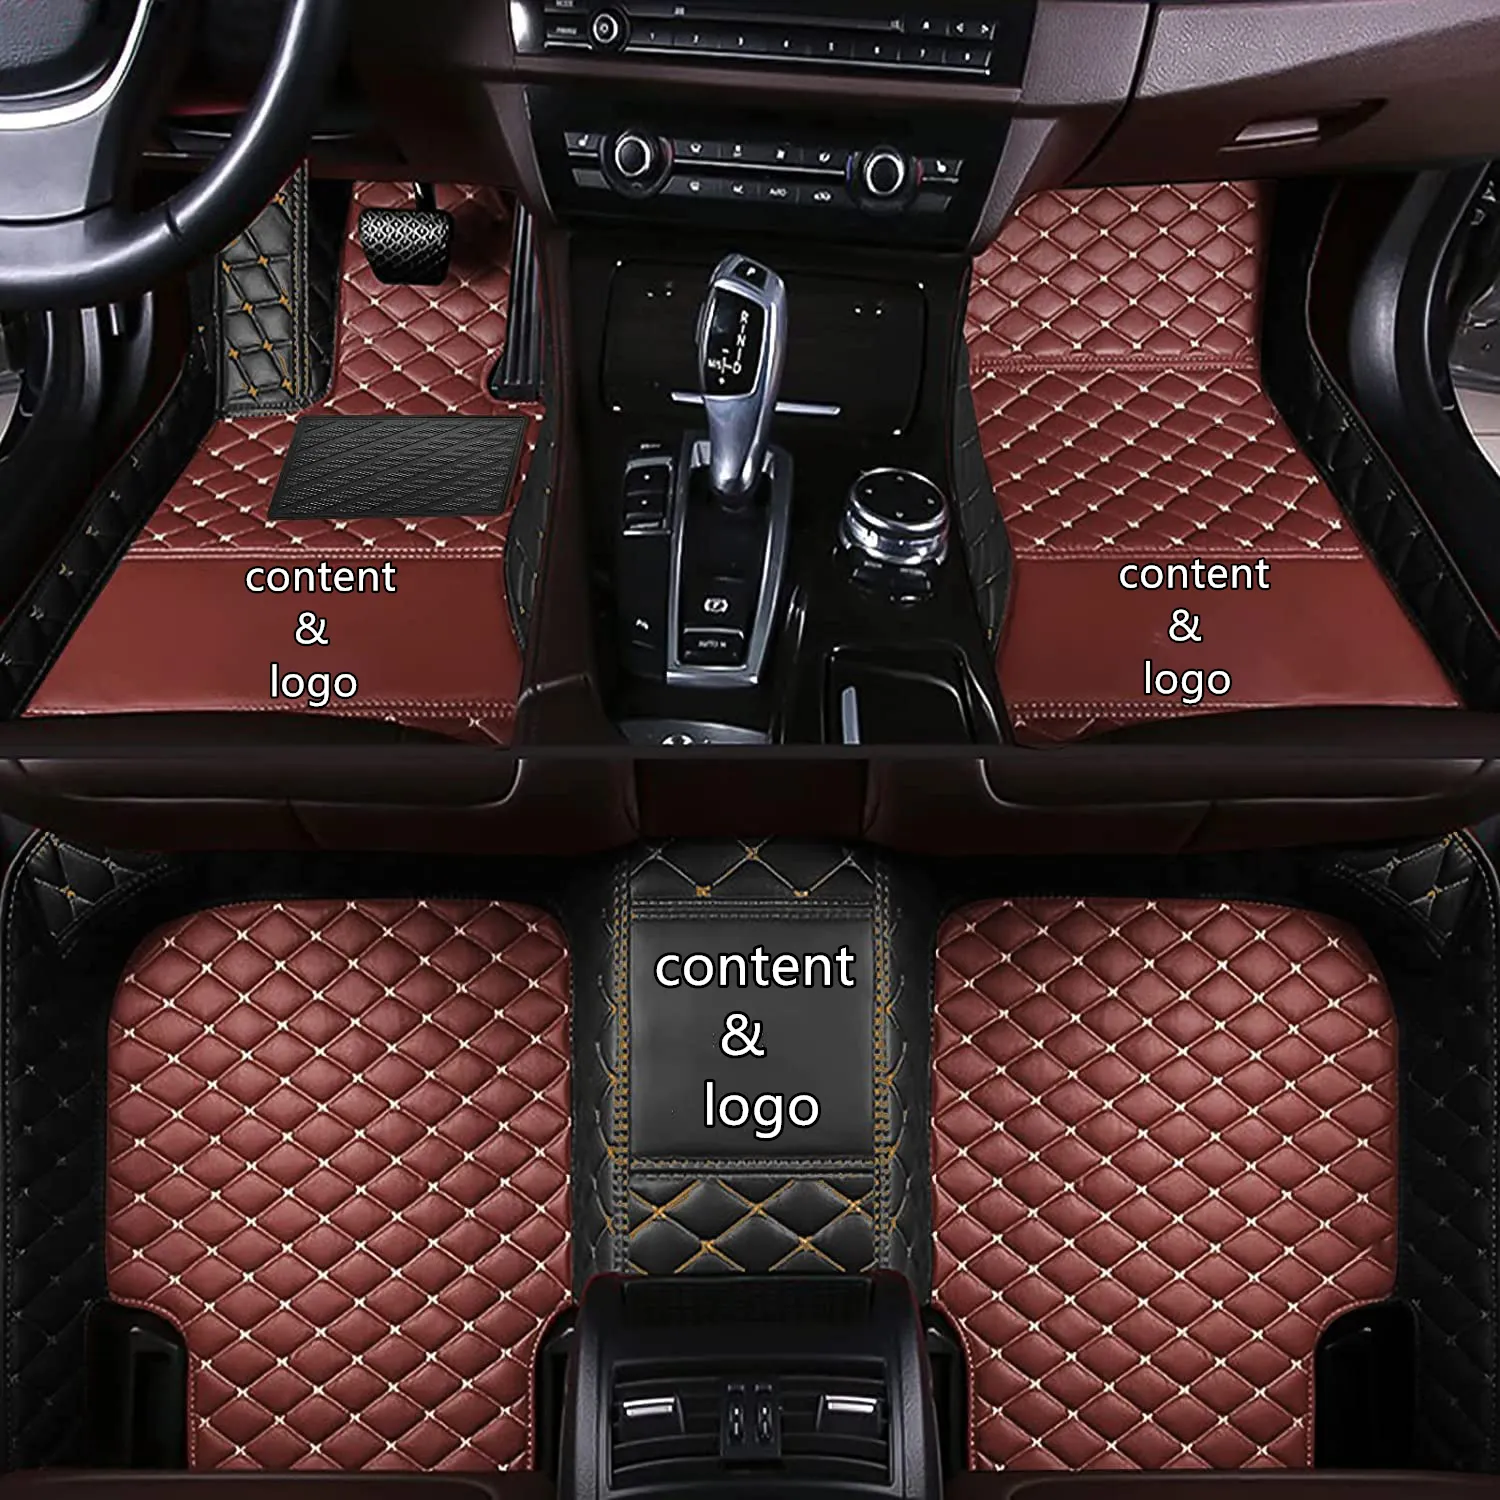 Adequado para tapetes de carro adequados para Lexus GS 2011 2010 2009 2008 carpete à prova d'água acessórios de carro personalizados produtos de reposição de peças internas